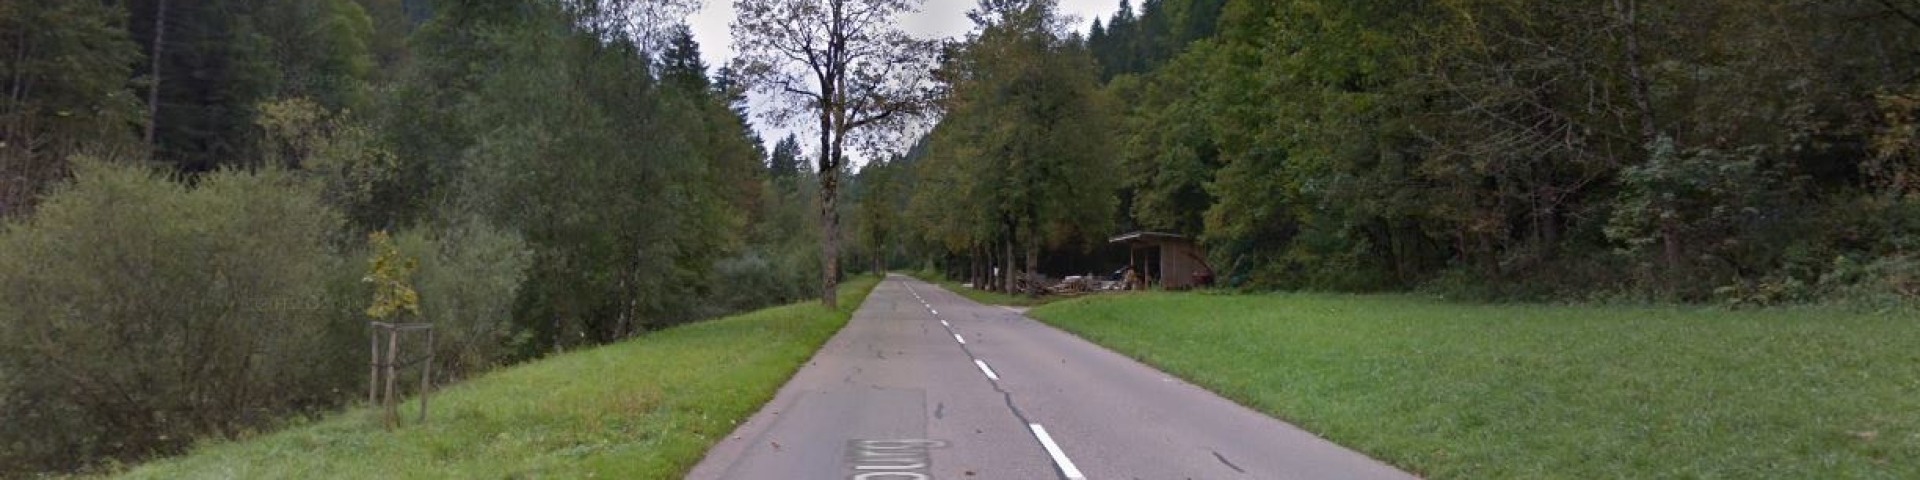 Fermeture de la route cantonale entre Buttes et Sainte-Croix Val-de-Travers